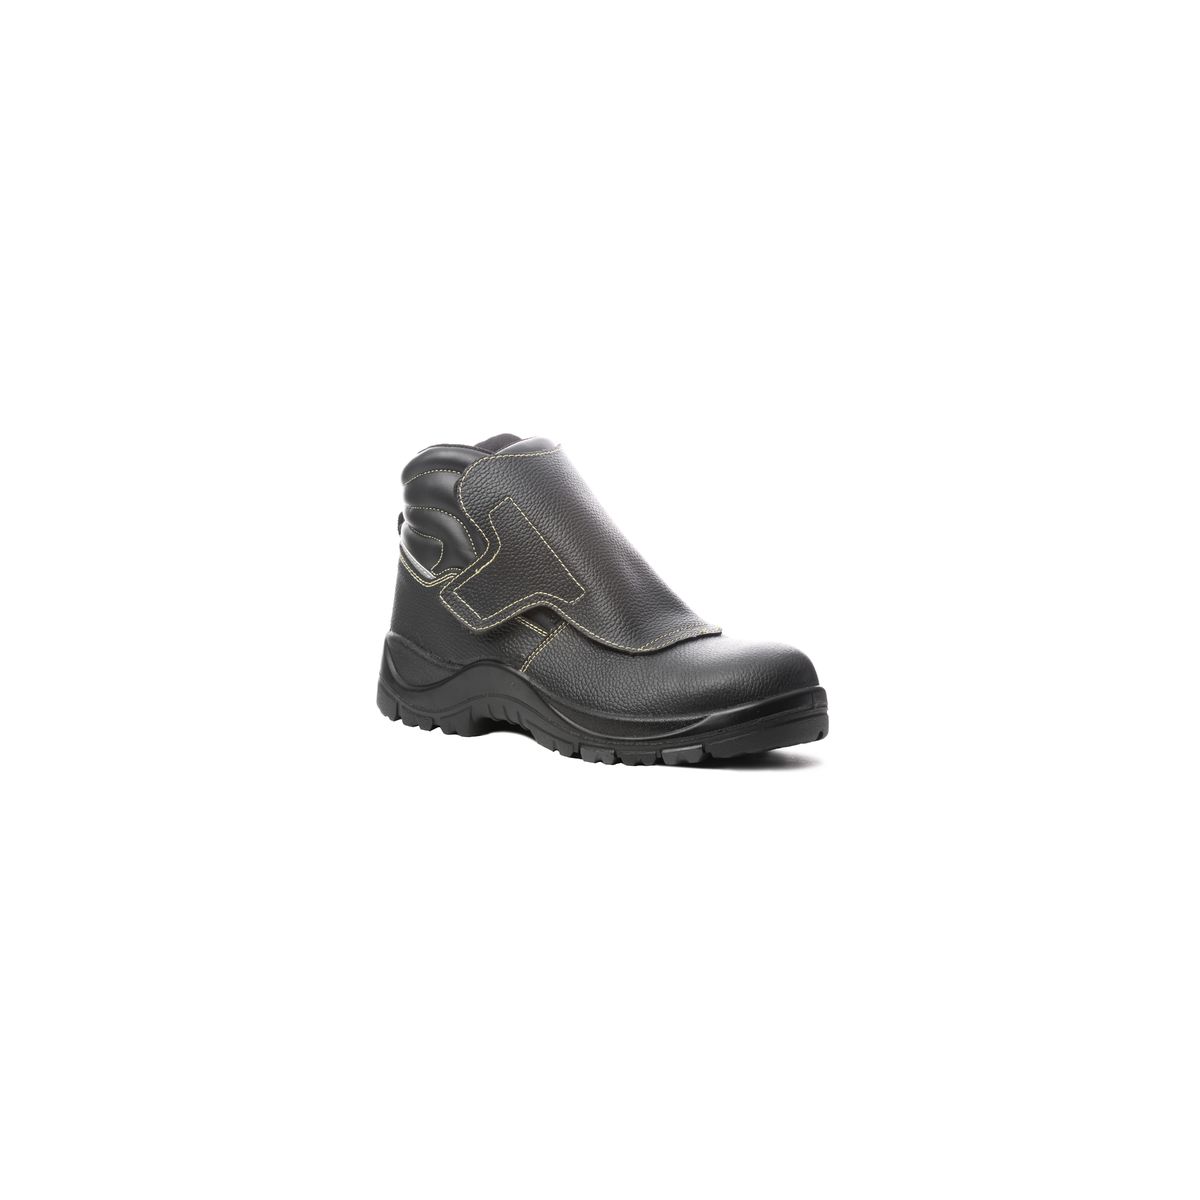 Chaussure de sécurité QANDILITE S3 SRC HRO soudeur composite - COVERGUARD - Taille 46 0